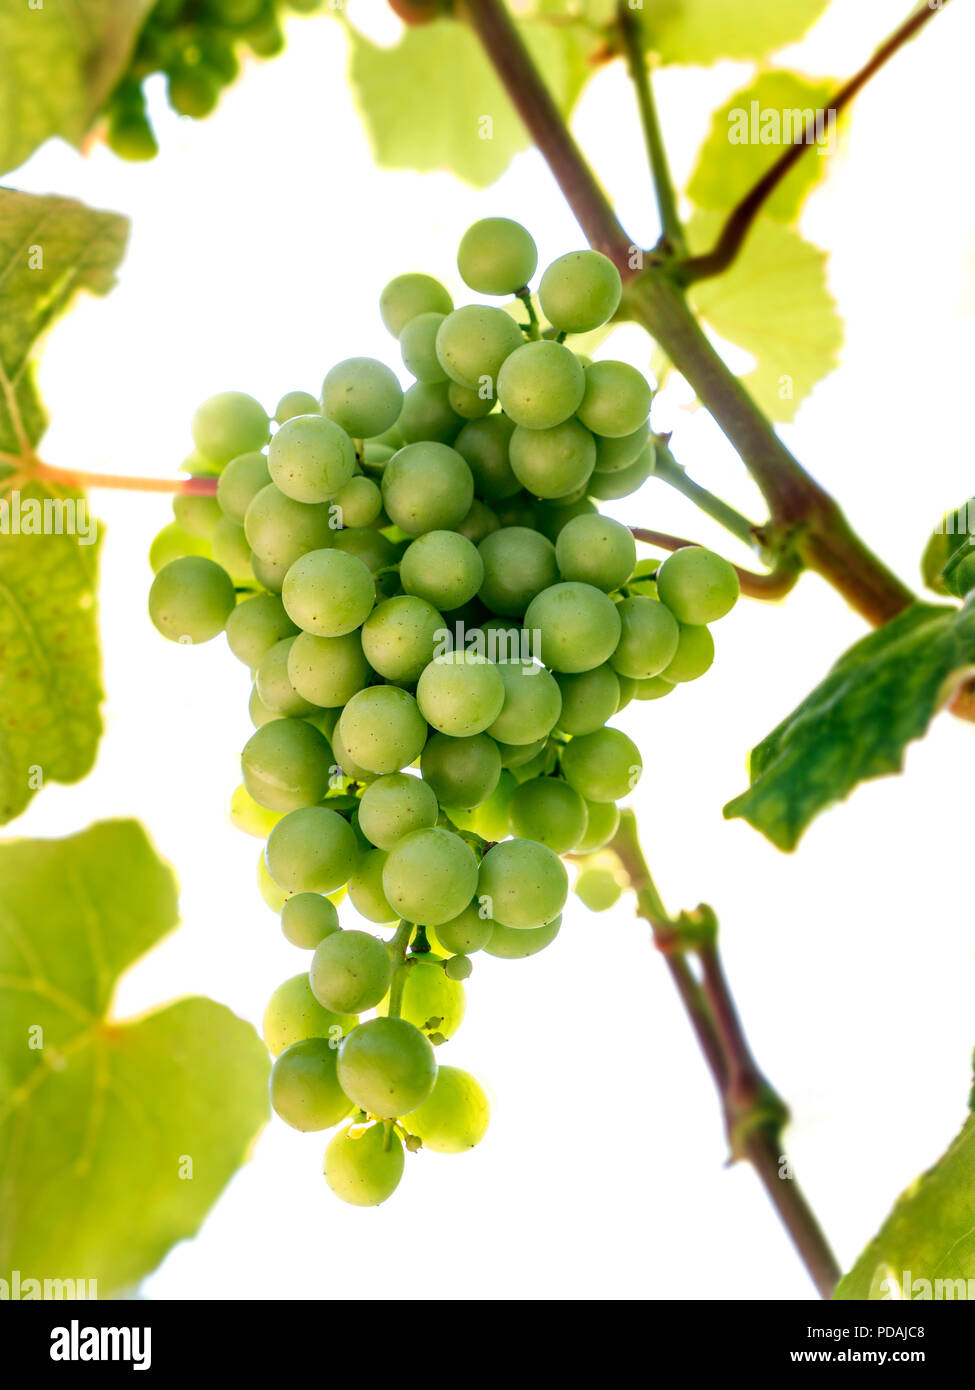 Fragola / Isabella varietà uva a basso angolo di visione maturazione sulla vite, dessert fragola come uva, produce il Fragolino spumante italiano Foto Stock